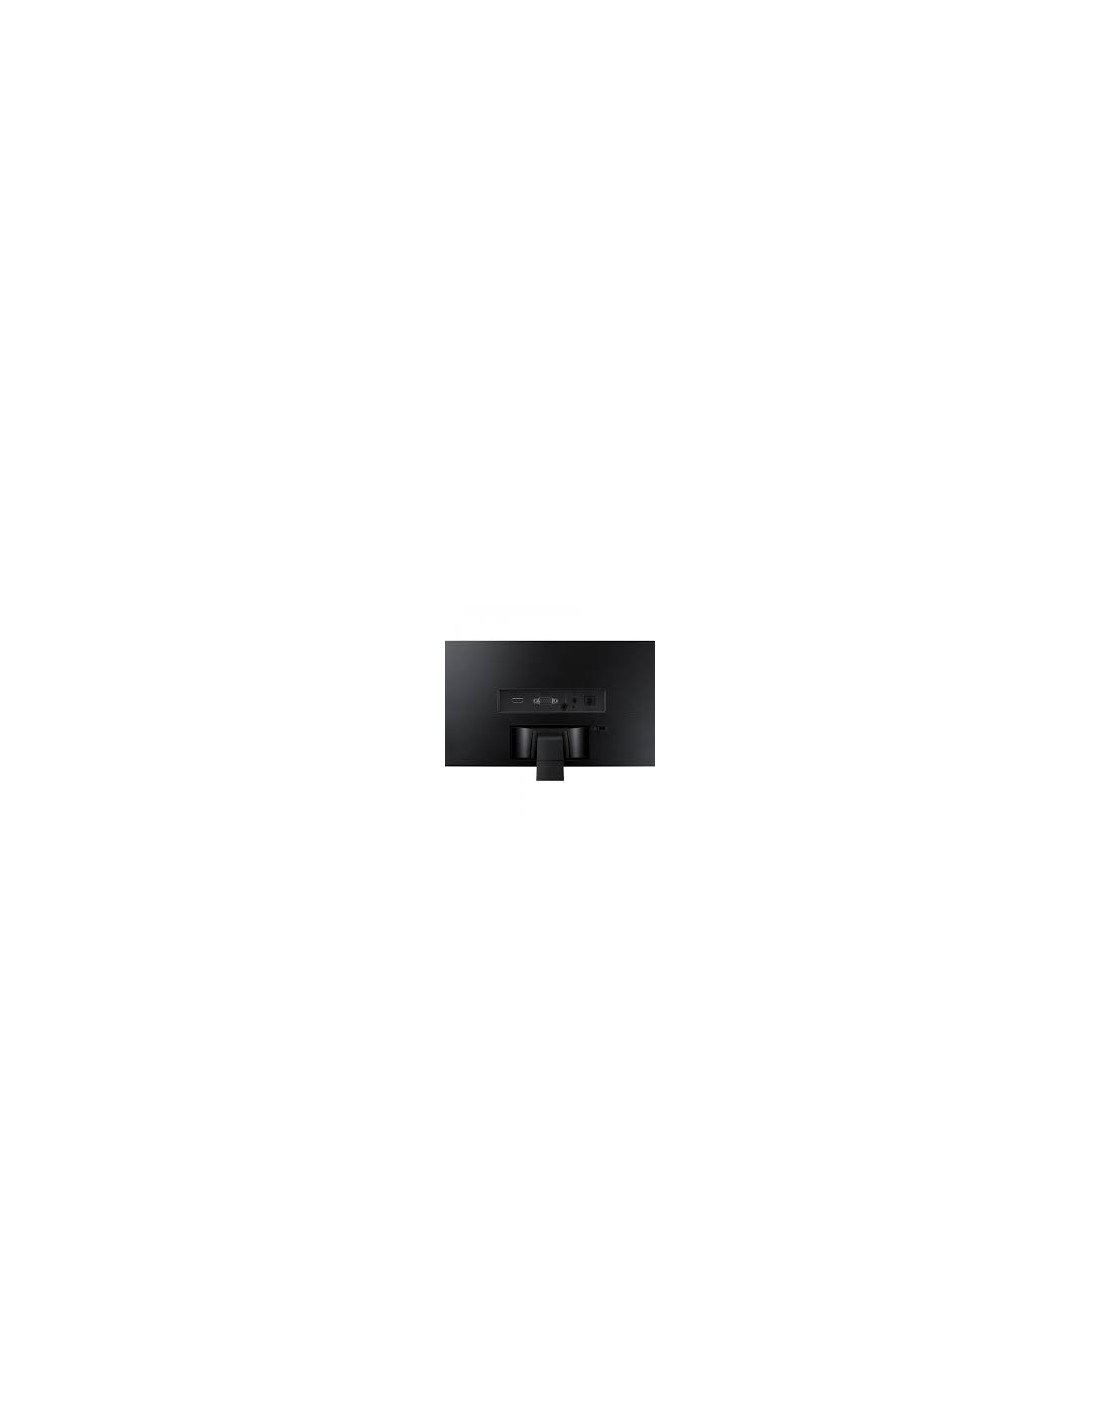 Ecran Samsung 24 Curved LED Full HD (LC24F390FHMXZN)